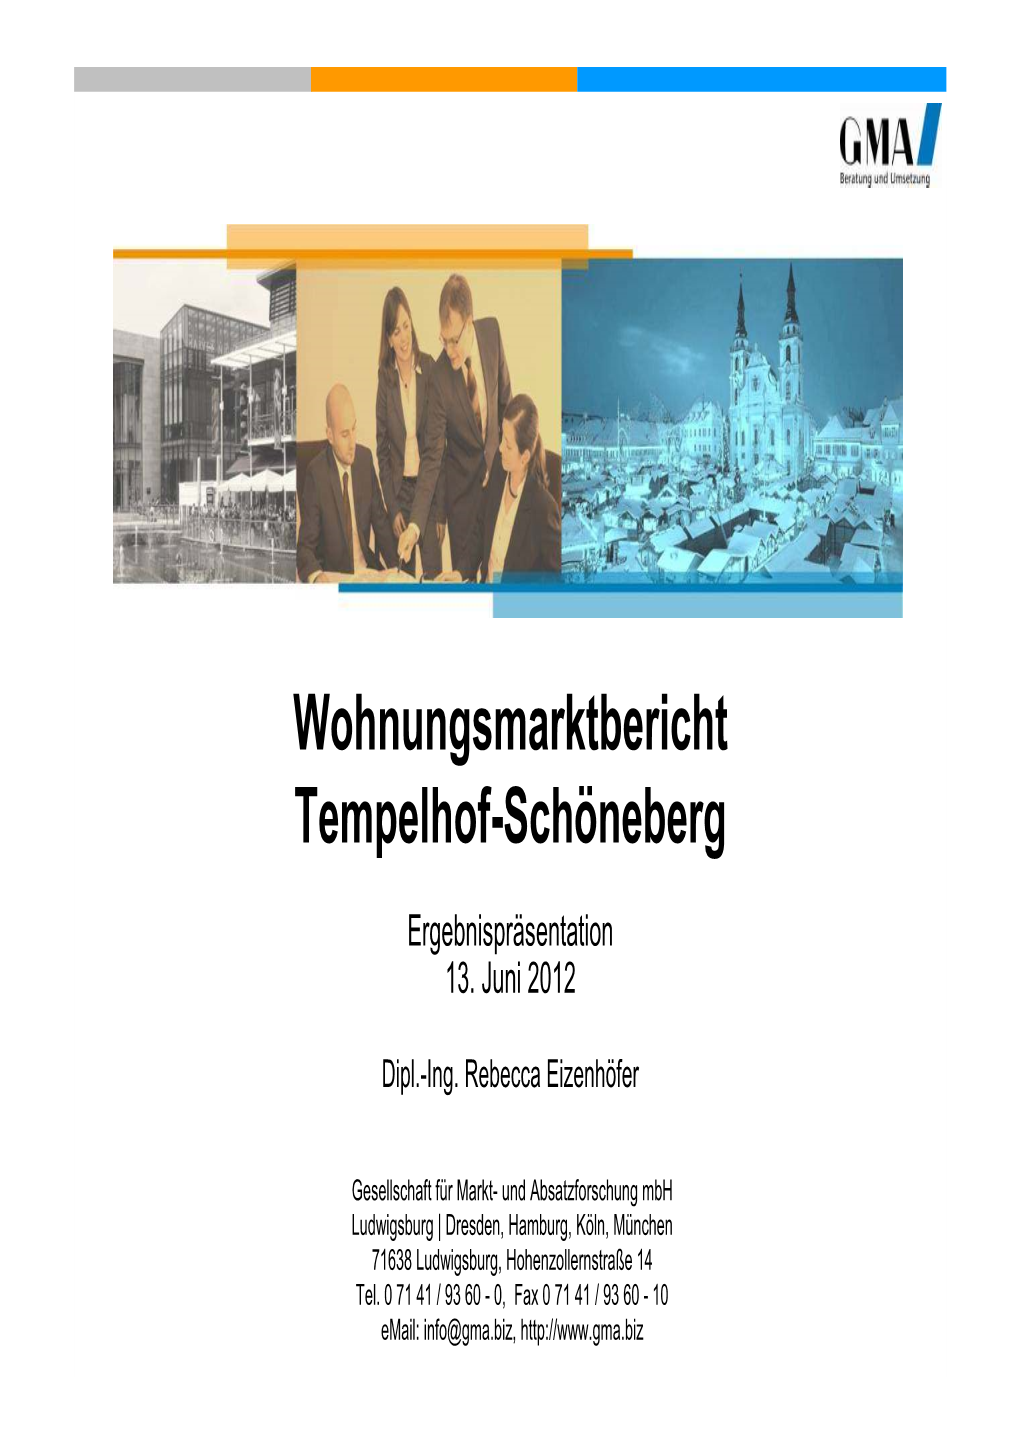 Wohnungsmarktbericht Tempelhof-Schöneberg